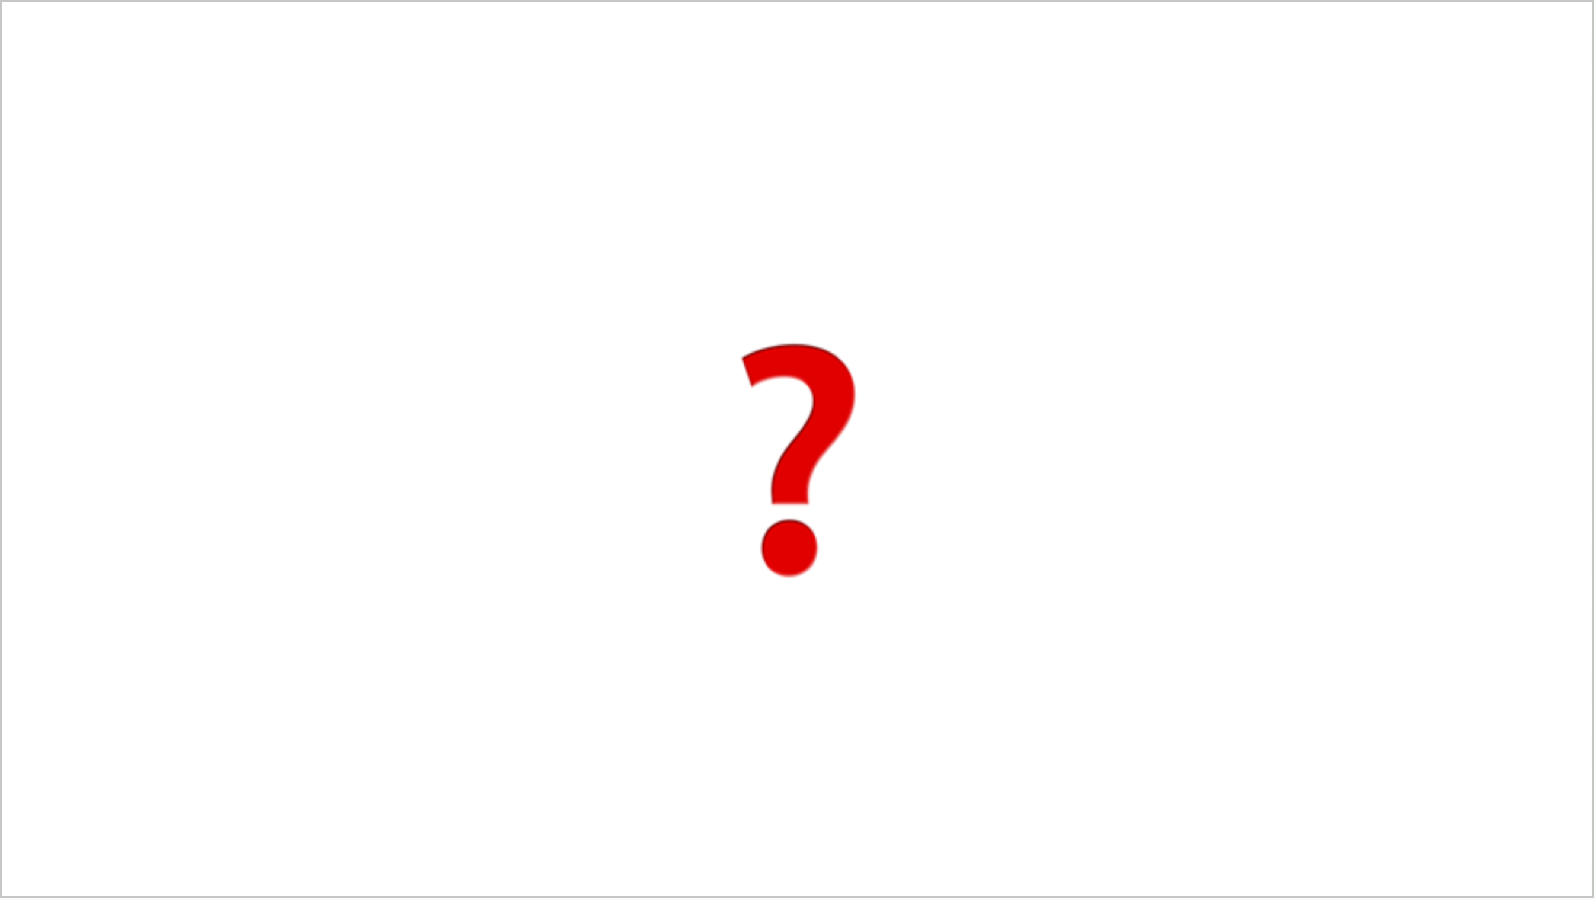 A question mark emoji